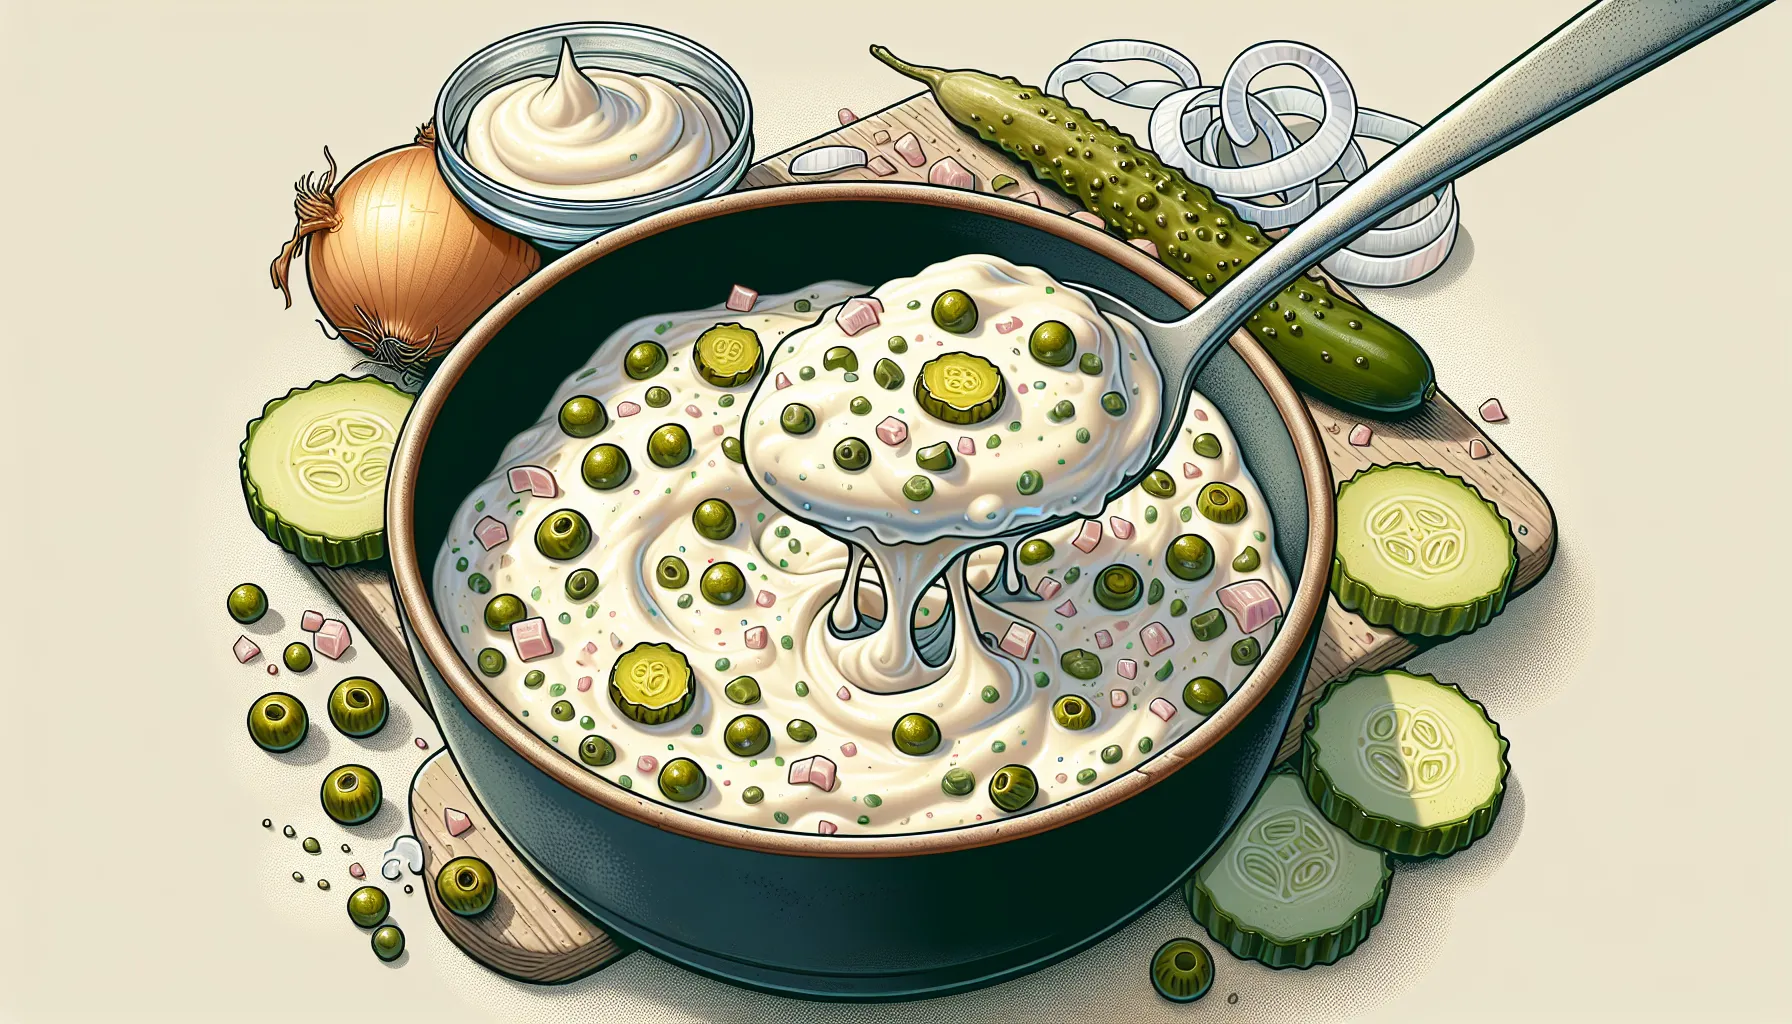 O molho tártaro é um acompanhamento delicioso e versátil que combina com diversos pratos, como peixes, frutos do mar e sanduíches. Se você está procurando a receita perfeita de molho tártaro, confira essas dicas e o passo a passo abaixo:

Ingredientes:
- 1 xícara de maionese
- 2 colheres de sopa de cebola pic